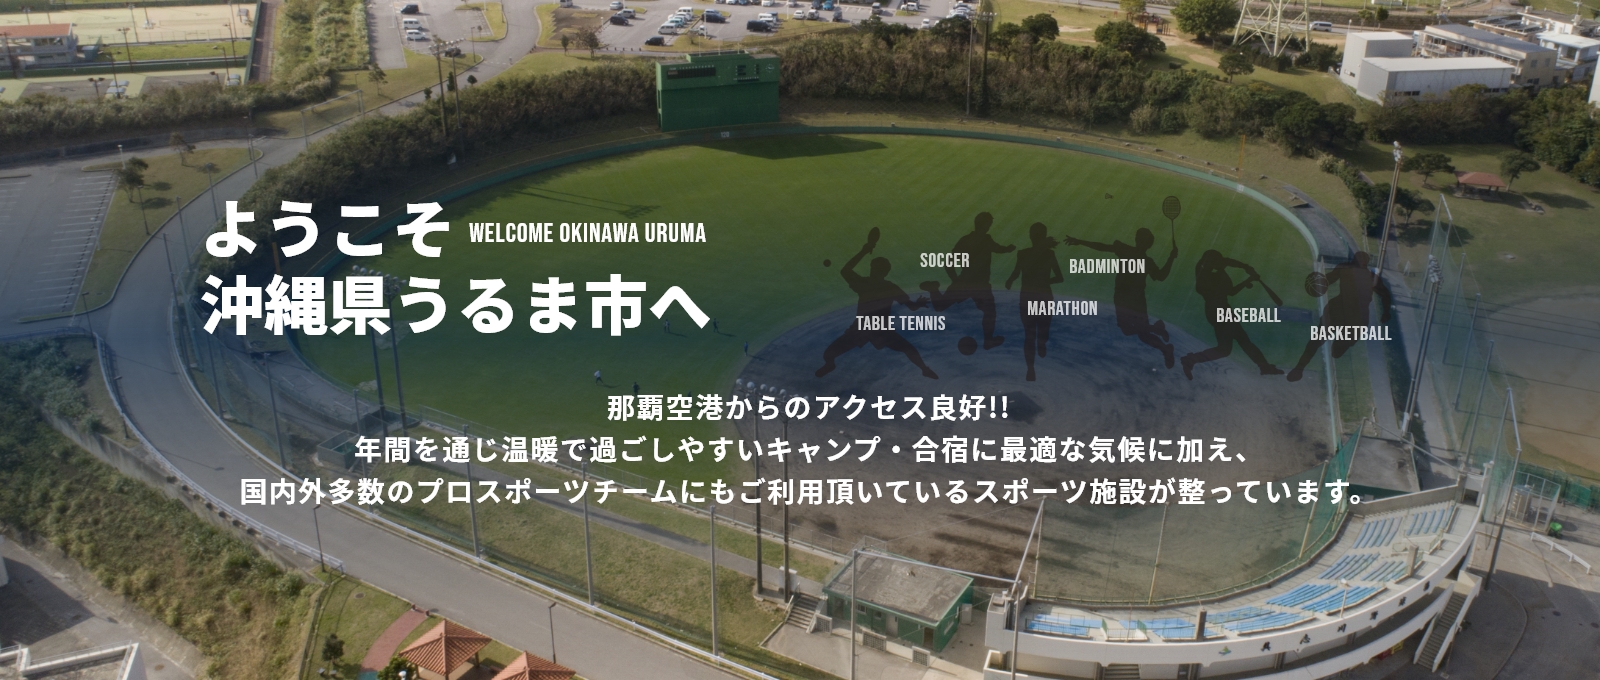 ようこそ沖縄県うるま市へ那覇空港からのアクセス良好!!年間を通じ温暖で過ごしやすいキャンプ・合宿に最適な気候に加え、国内外多数のプロスポーツチームにもご利用頂いているスポーツ施設が整っています。